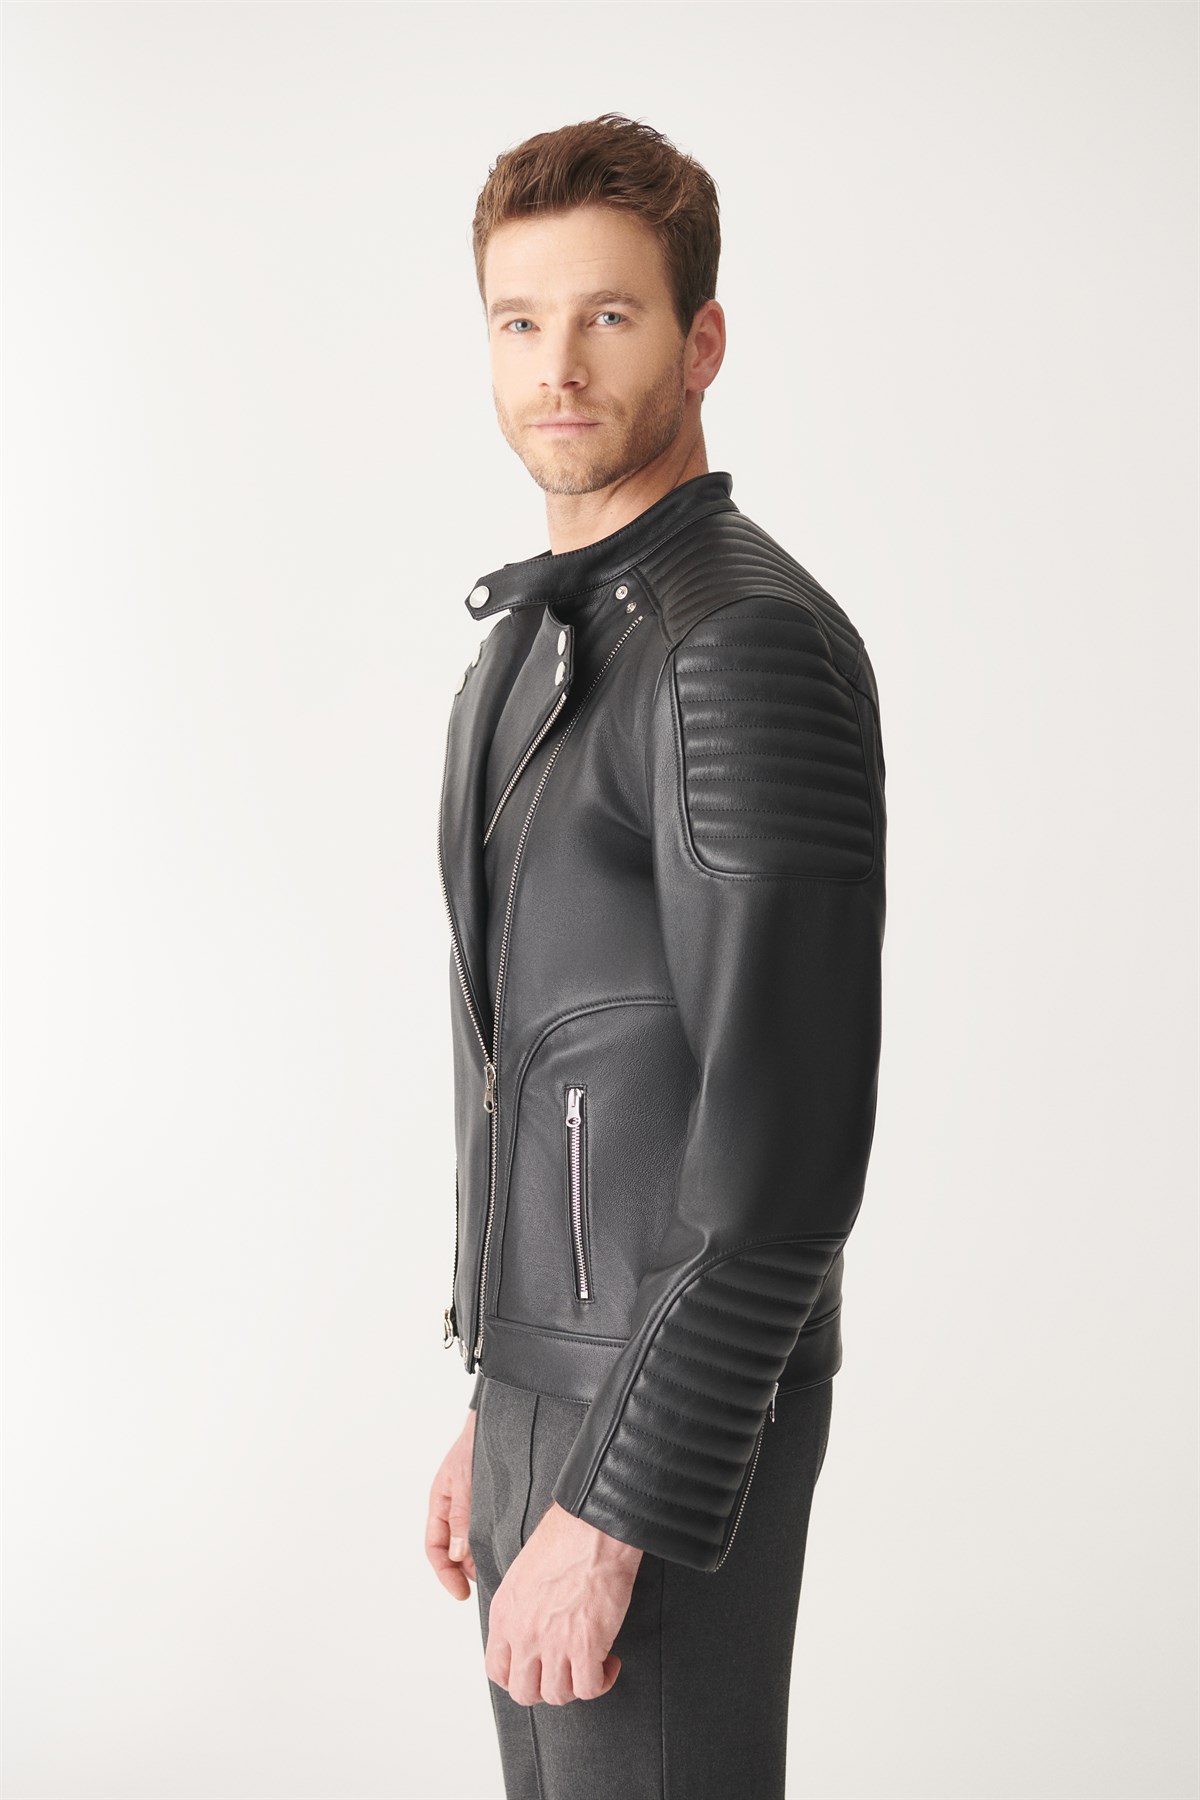 SOSA Black Biker Leather Jacket | Men's Leather Jacket Models